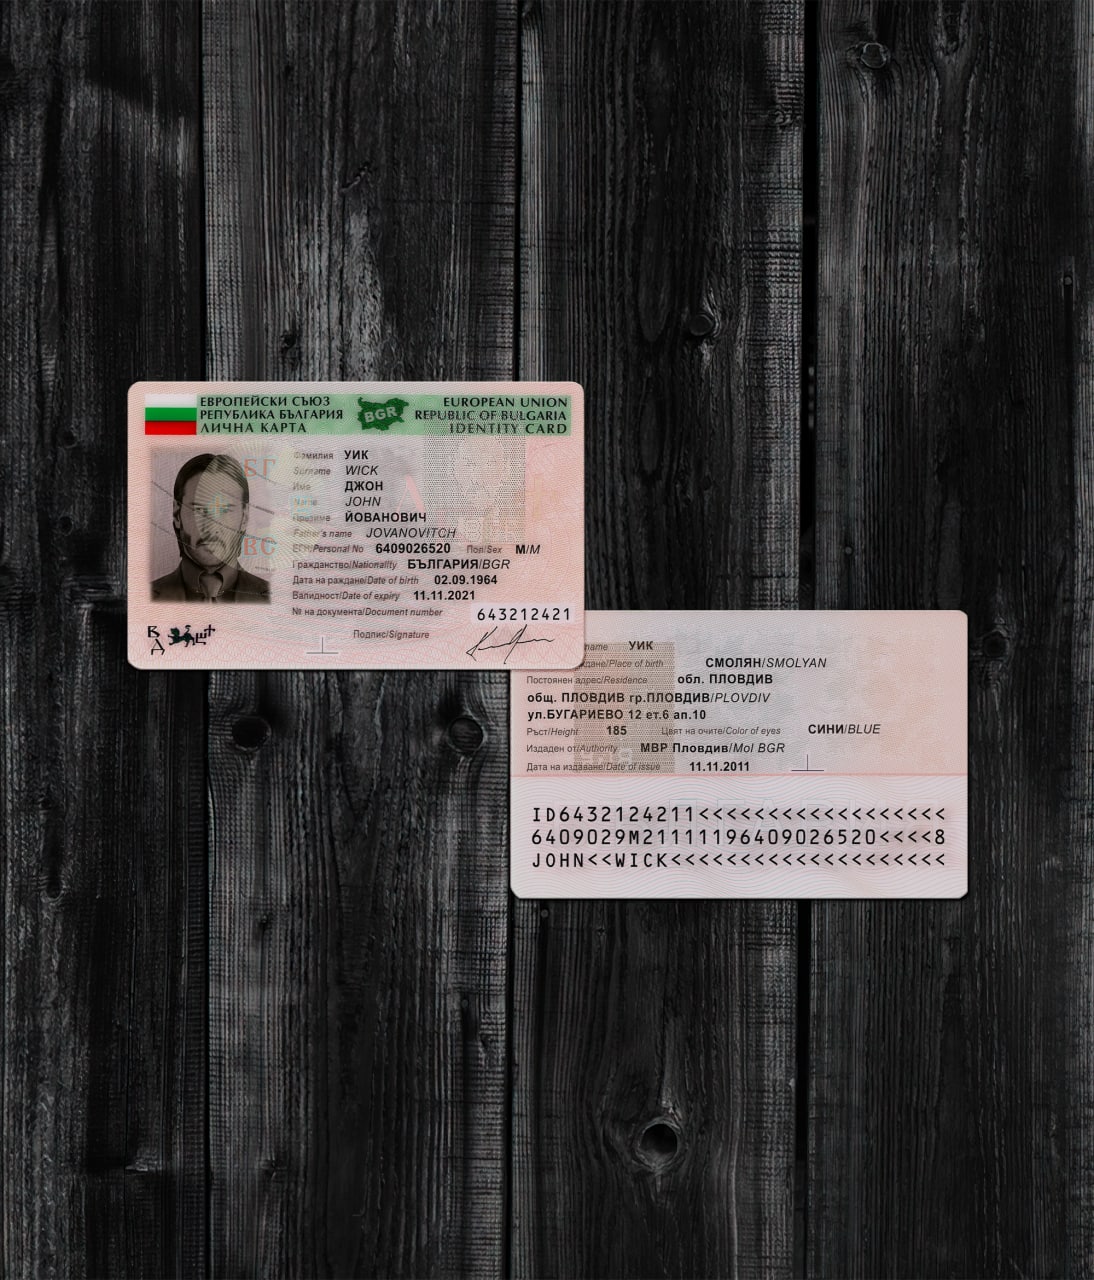 Bulgaria ID Card 2010+2